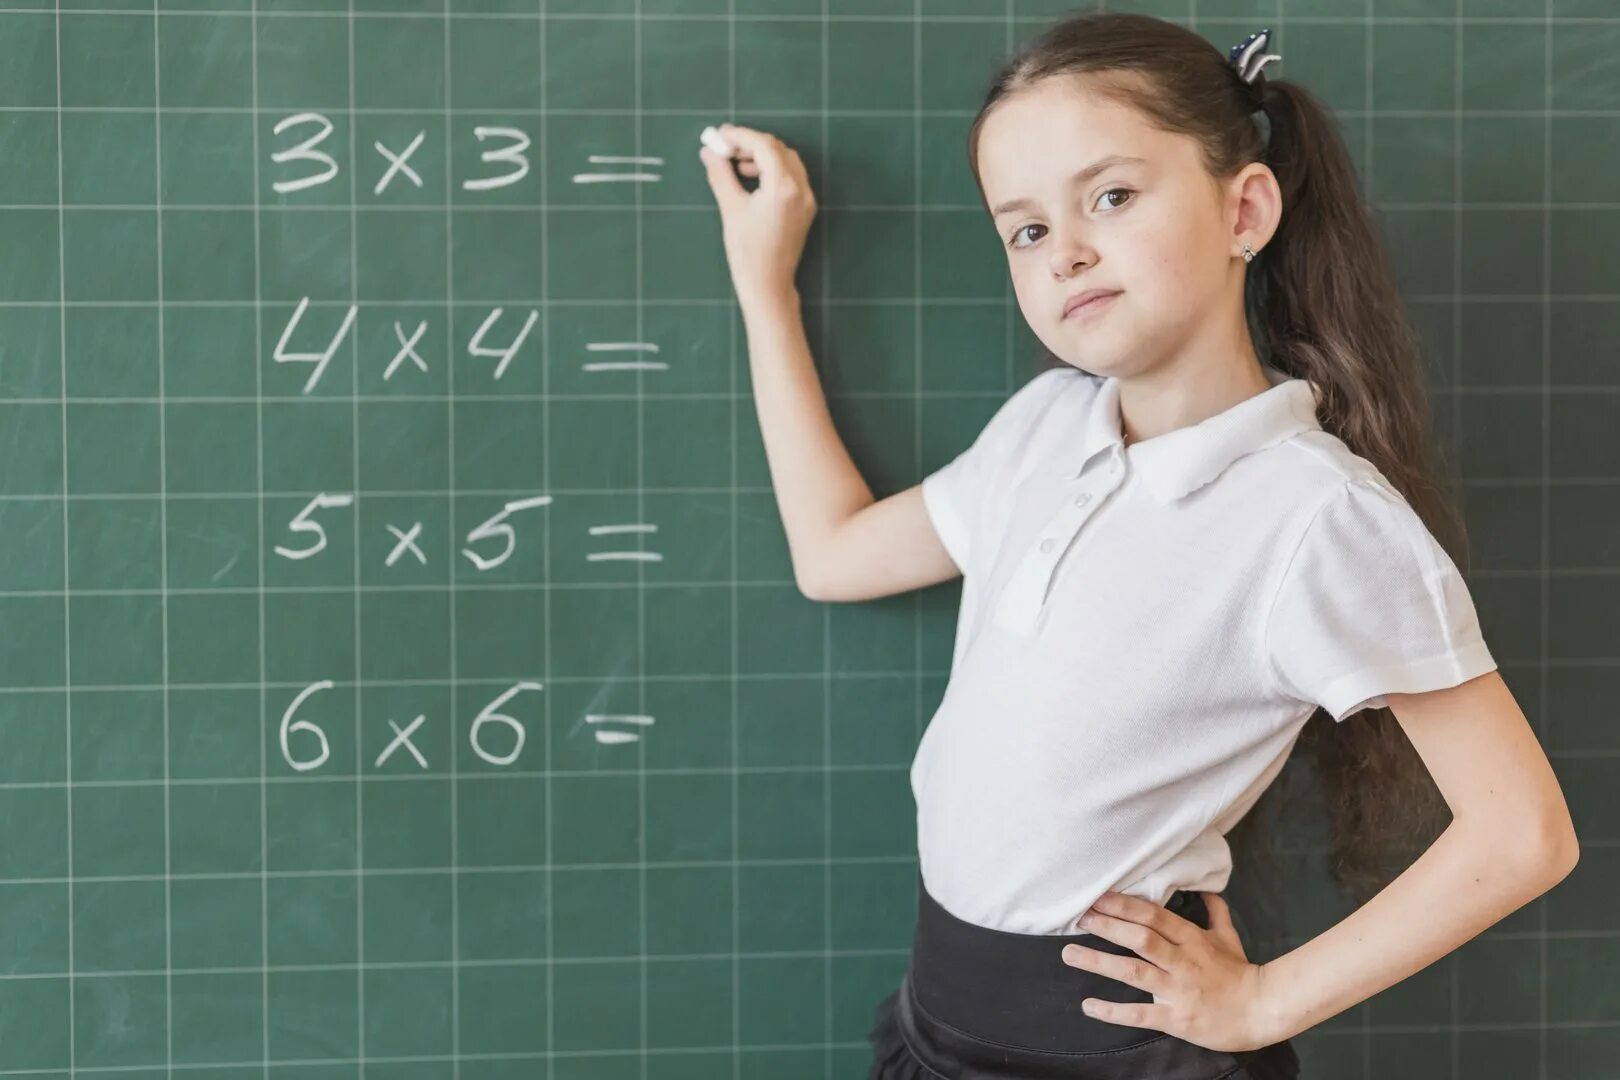 Умножение 1024. Ребенок учит математику. Таблица умножения для детей. Урок математики в школе. Математика для школьников.